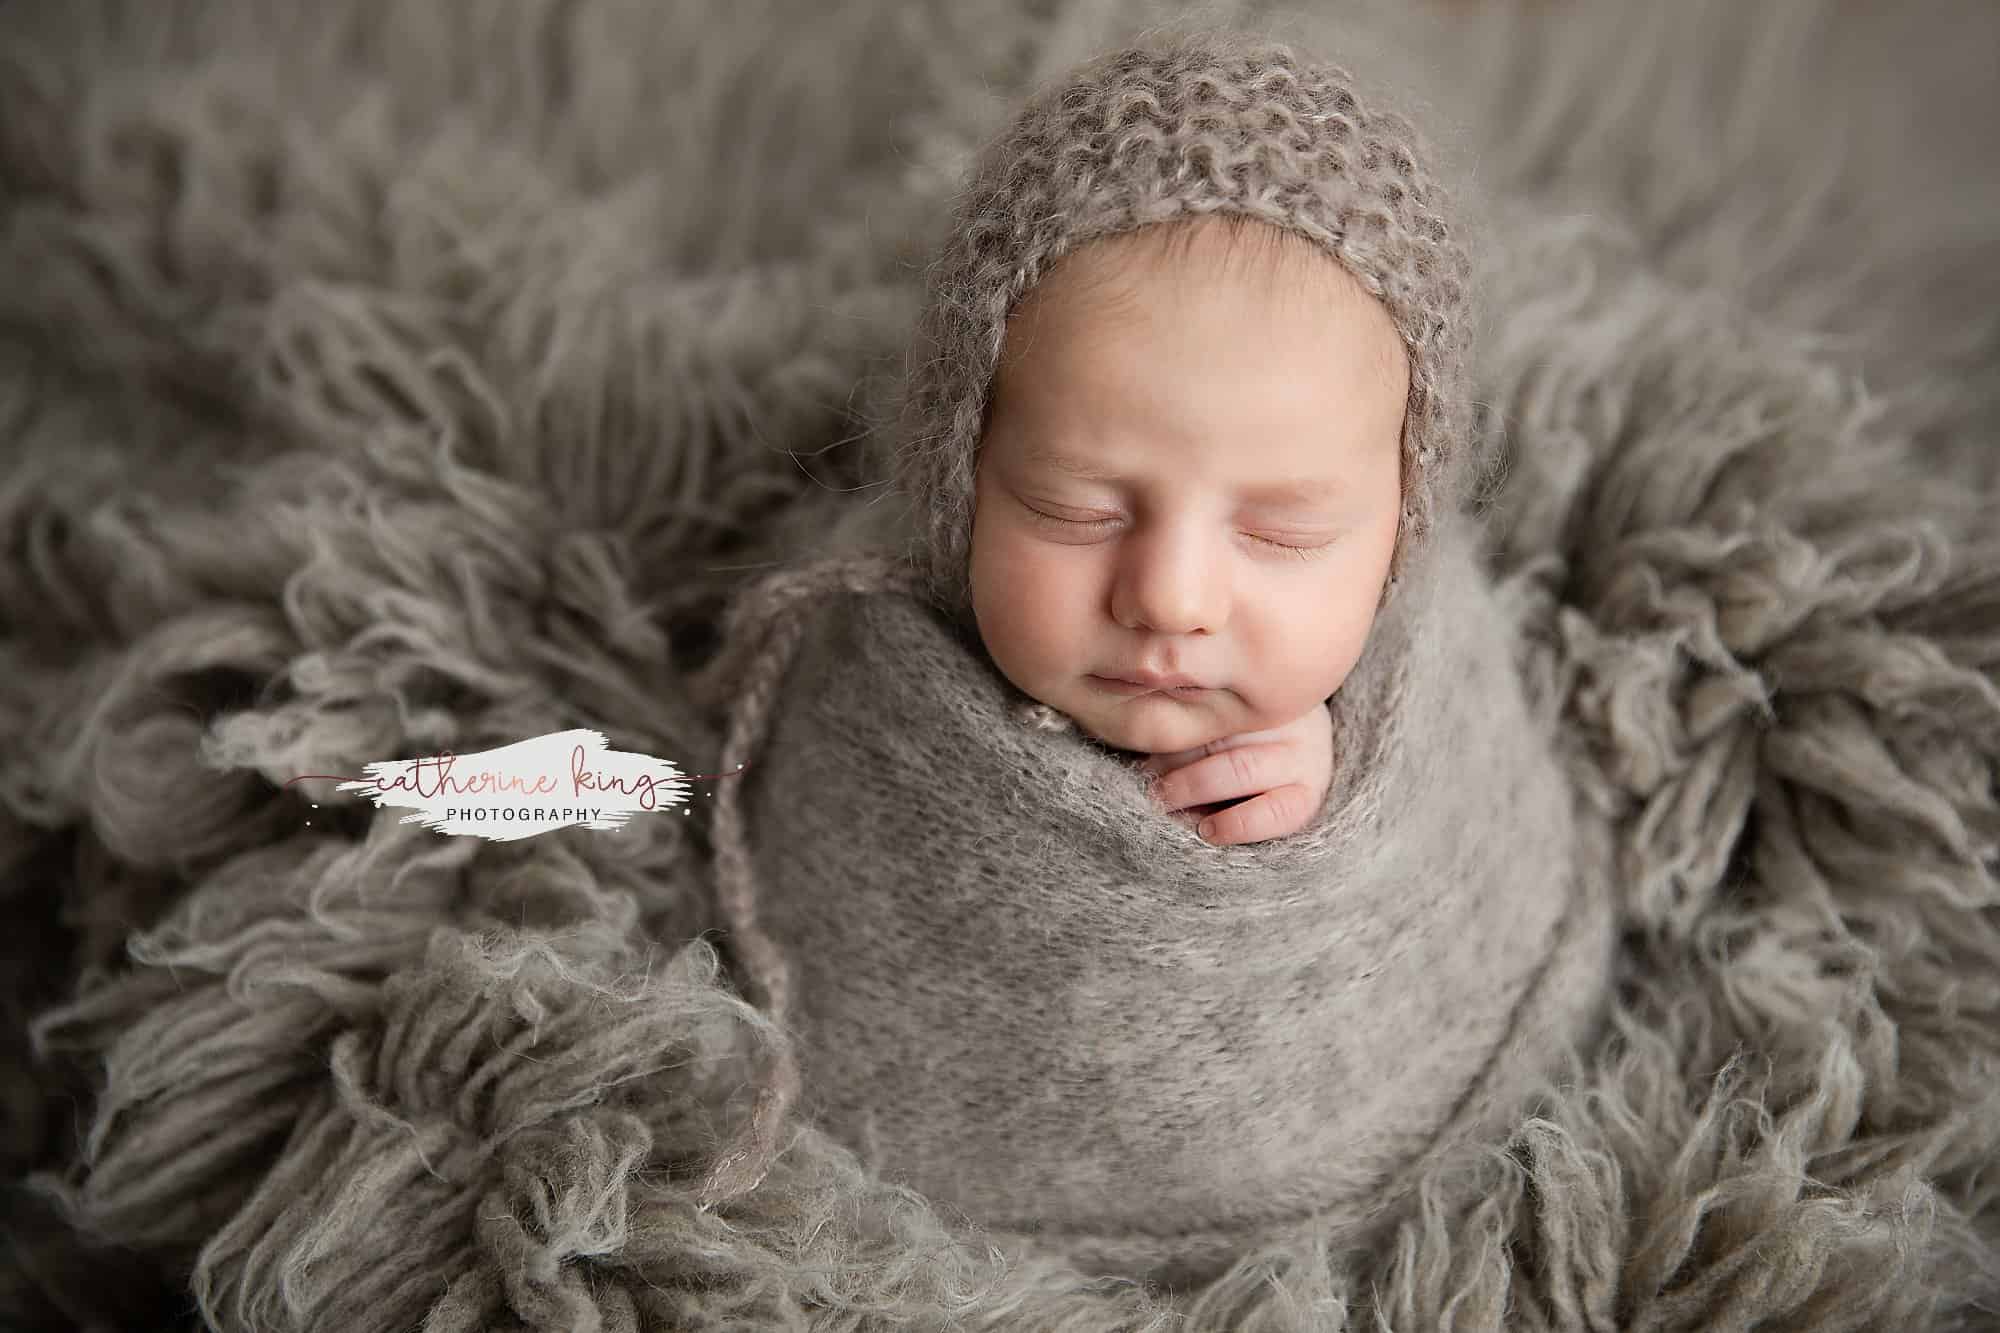 Sam's gorgeous newborn photography session | Cheshire CT Newborn Photographer